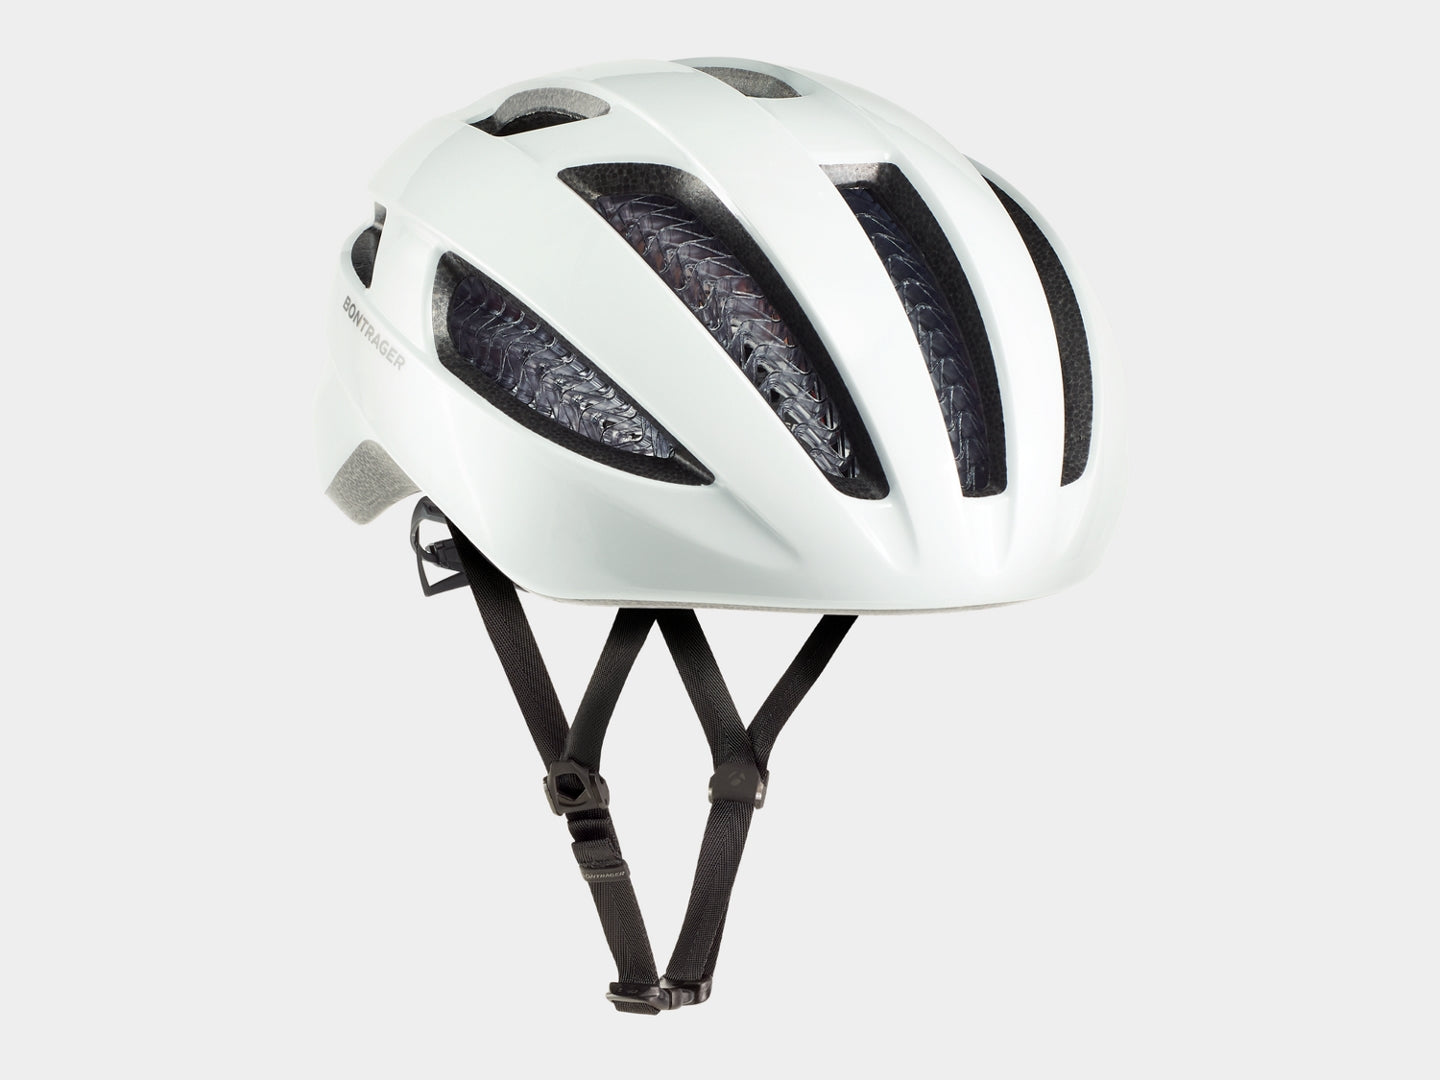 Bontrager Starvos WaveCel Road Helmet- Bike Helmets- Wavecel Technology